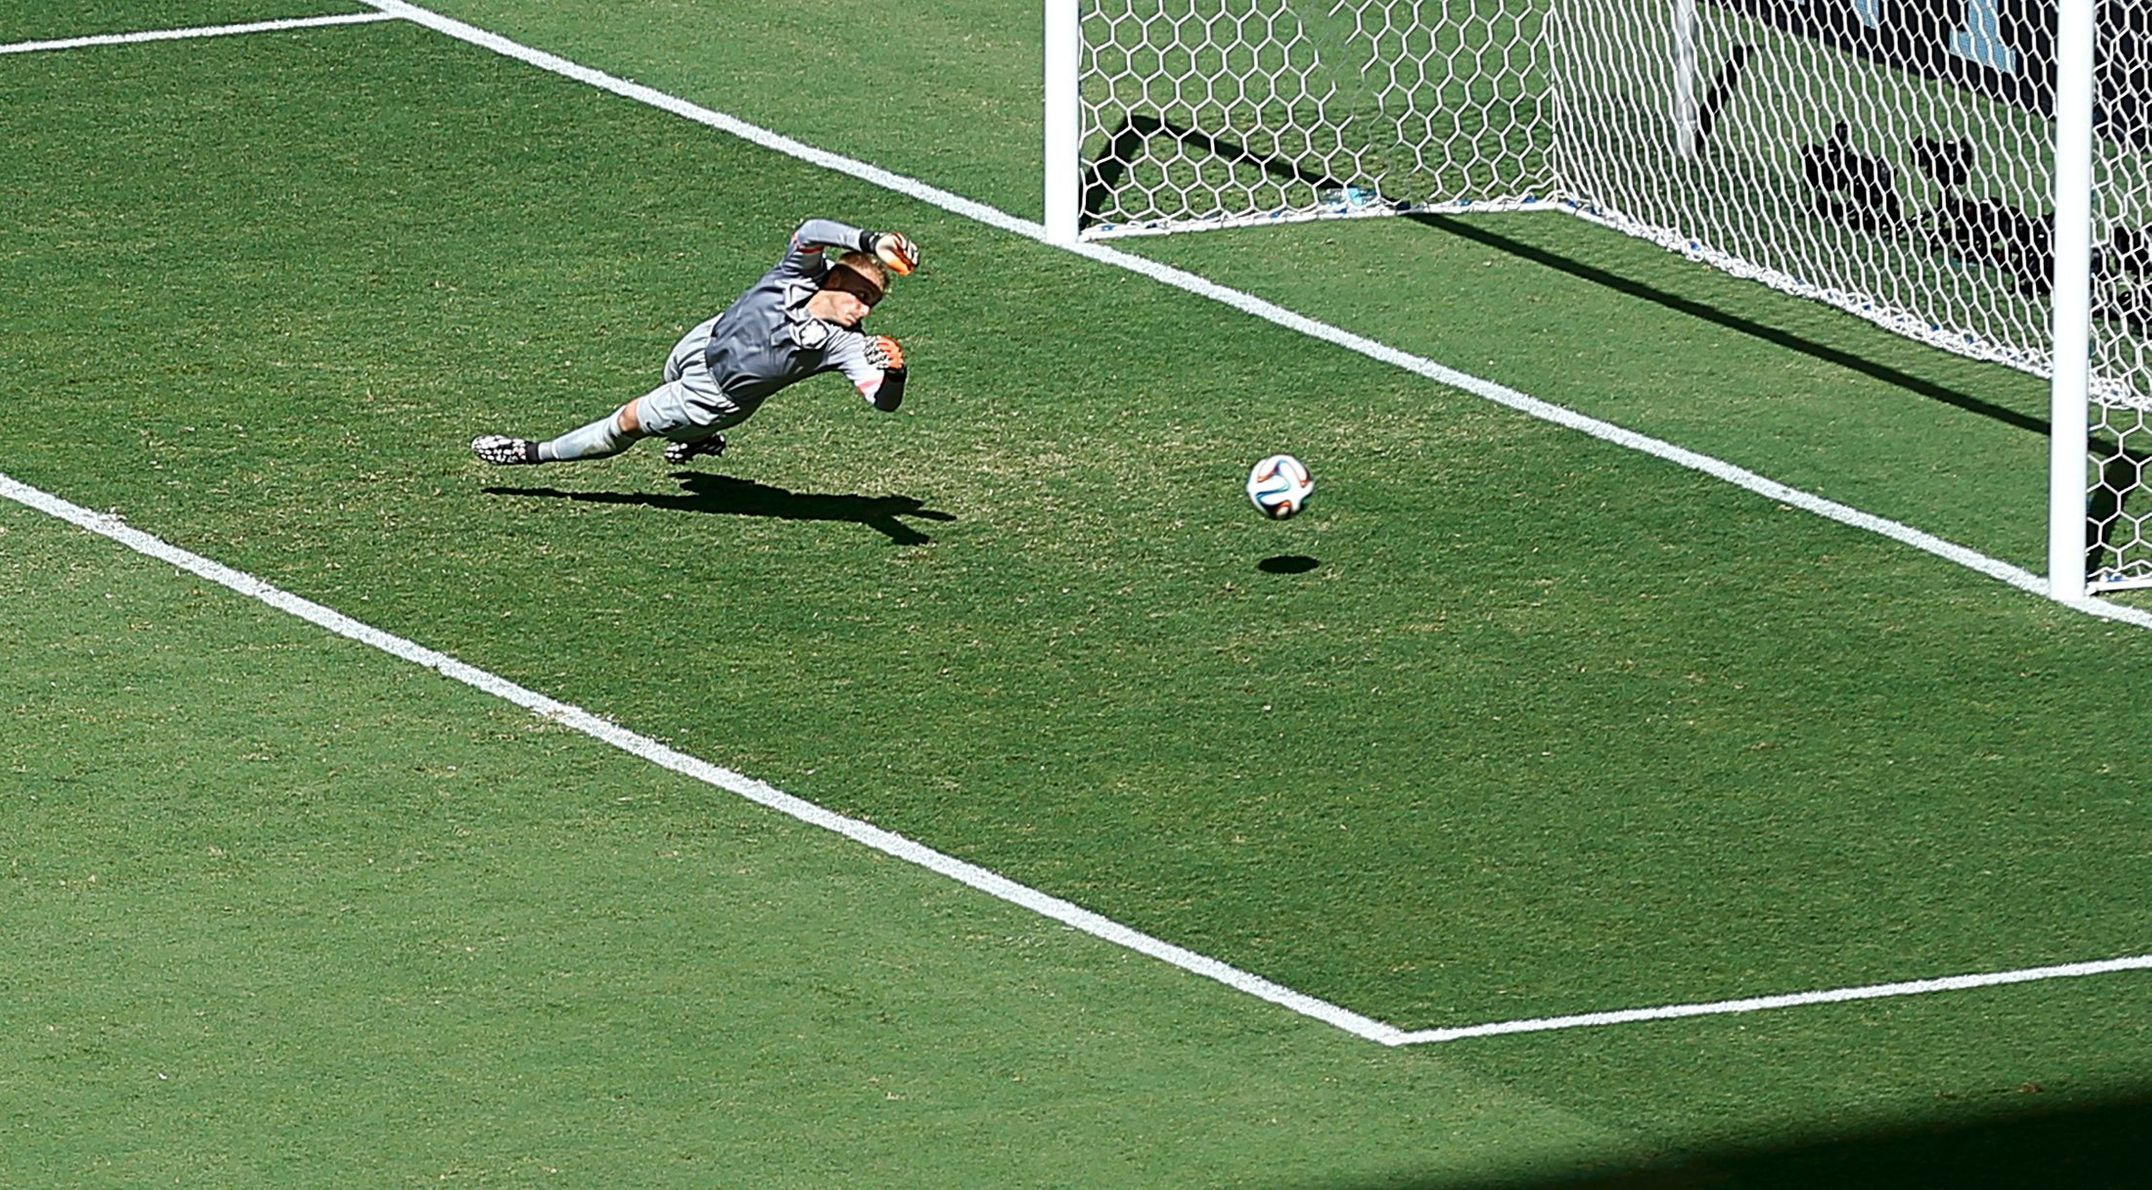 MS 2014, Nizozemsko-Mexiko: Jasper Cillessen dostává gól